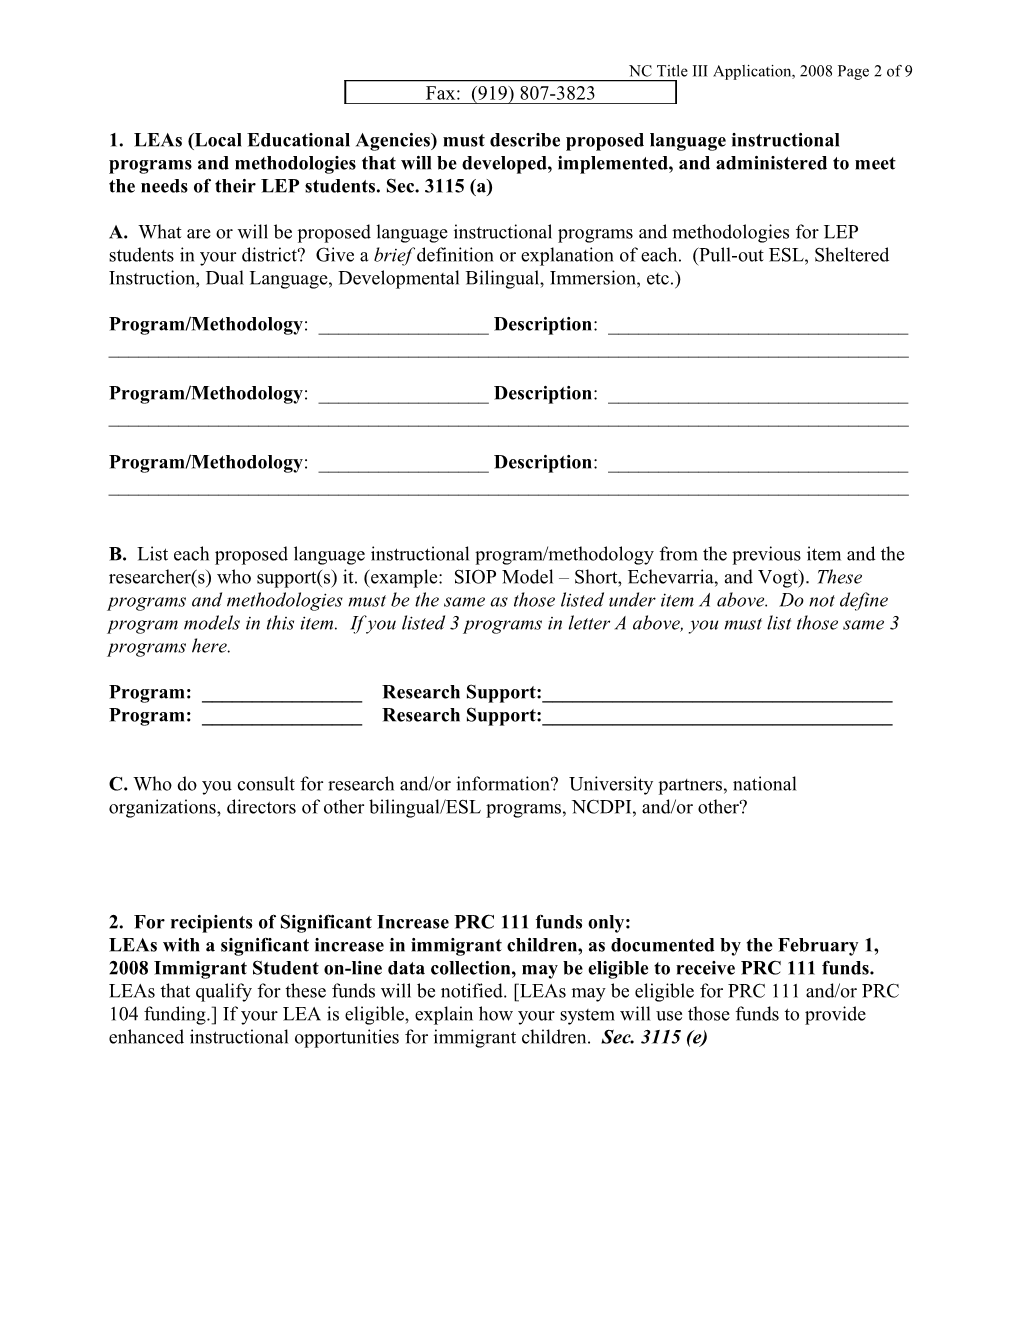 Checklist for LEA Title III Grant Application 2002-2003